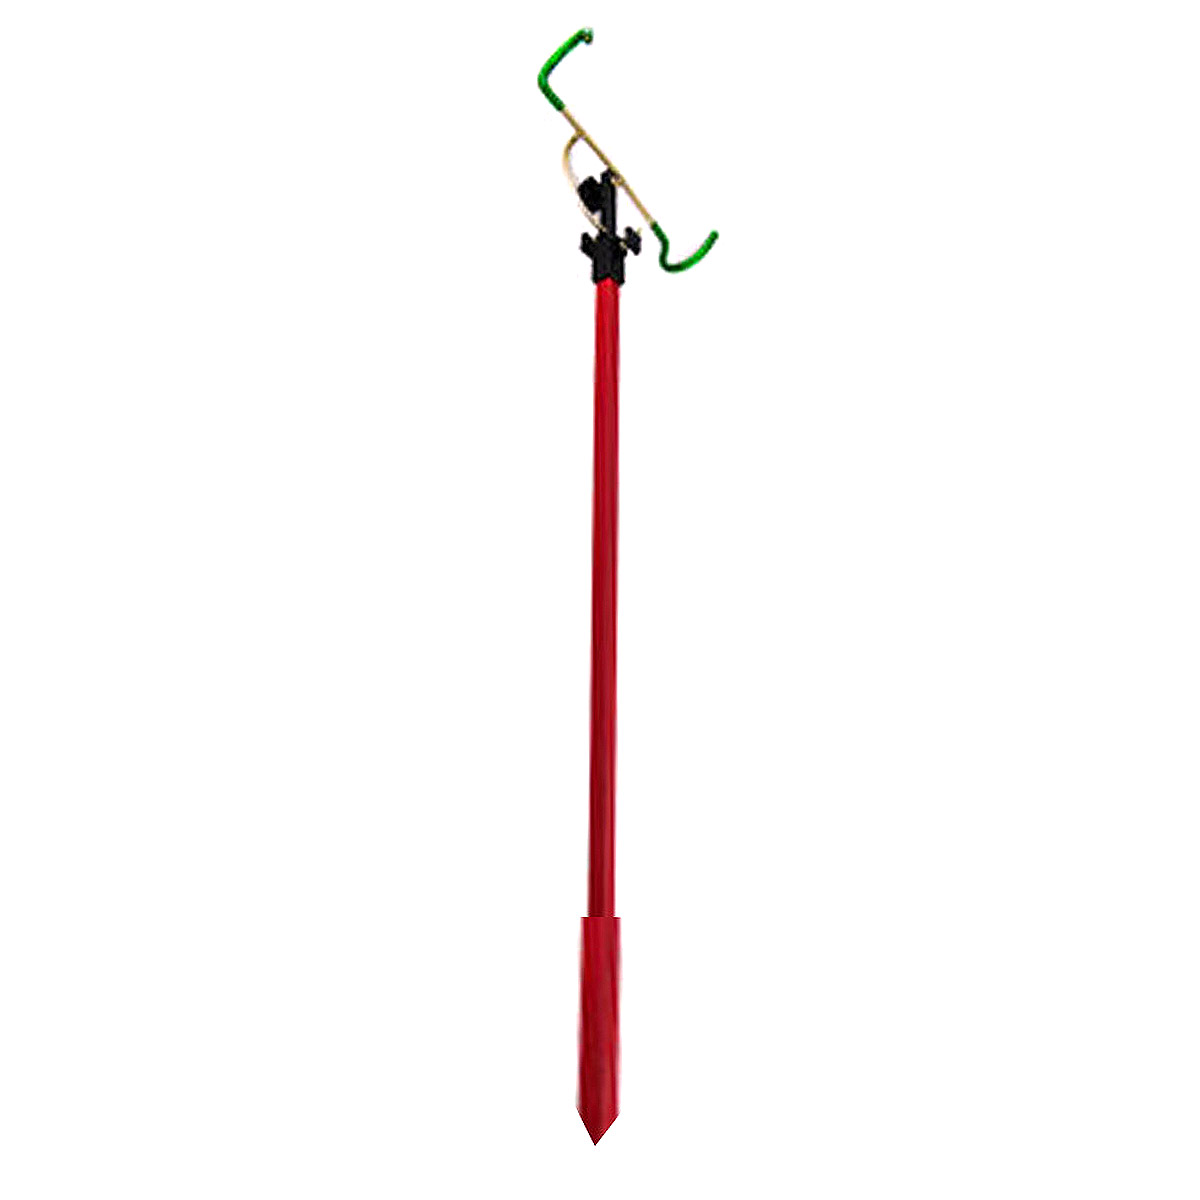 Zunnebeld Support rod holder 50-90 cm